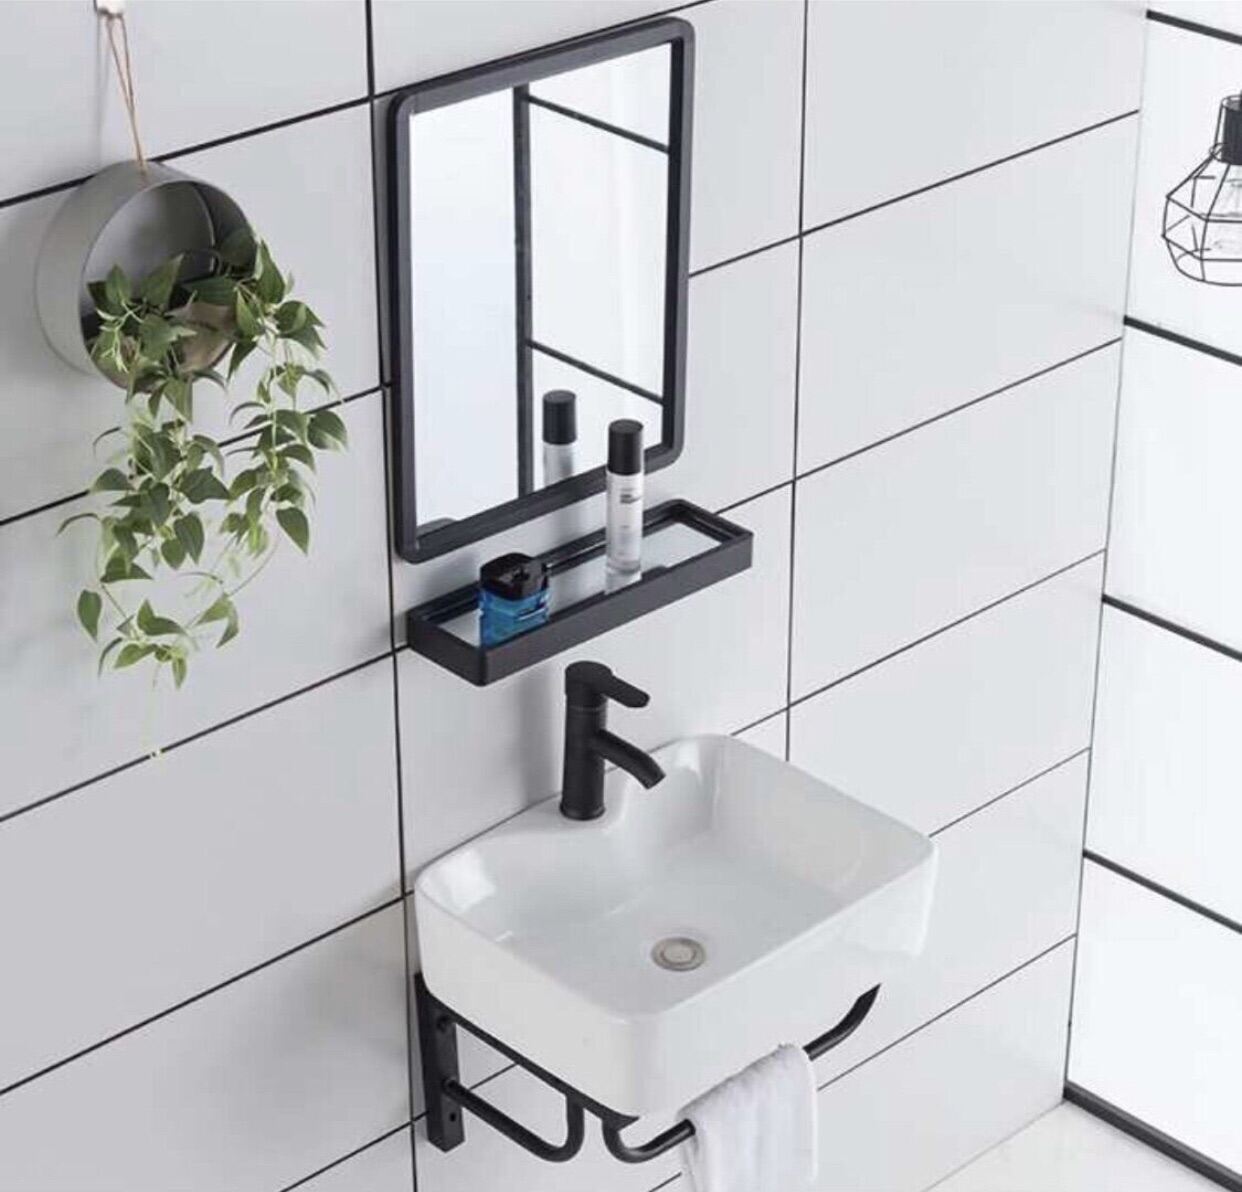 Bồn rửa mặt treo tường KỆ LAVABO RỬA MẶT 4 MÓN( gương+ kệ kính+ lavabo+khung treo)